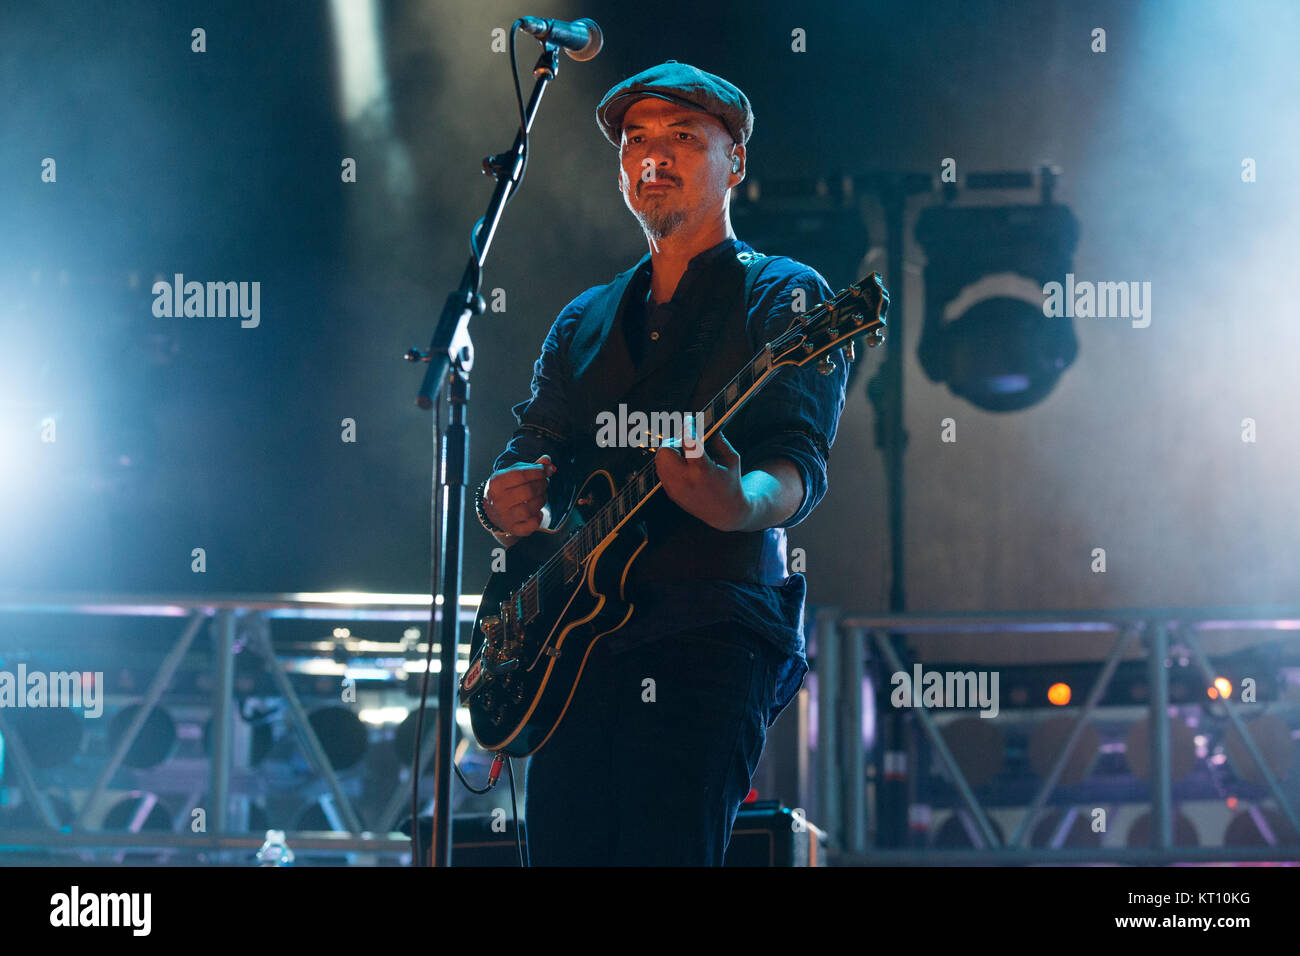 Norvegia, Oslo - Agosto 11, 2017. La American rock band Pixies esegue un concerto dal vivo durante un concerto di musica norvegese Øyafestivalen festival 2017 a Oslo. Qui il chitarrista Joey Santiago è visto dal vivo sul palco. Foto Stock